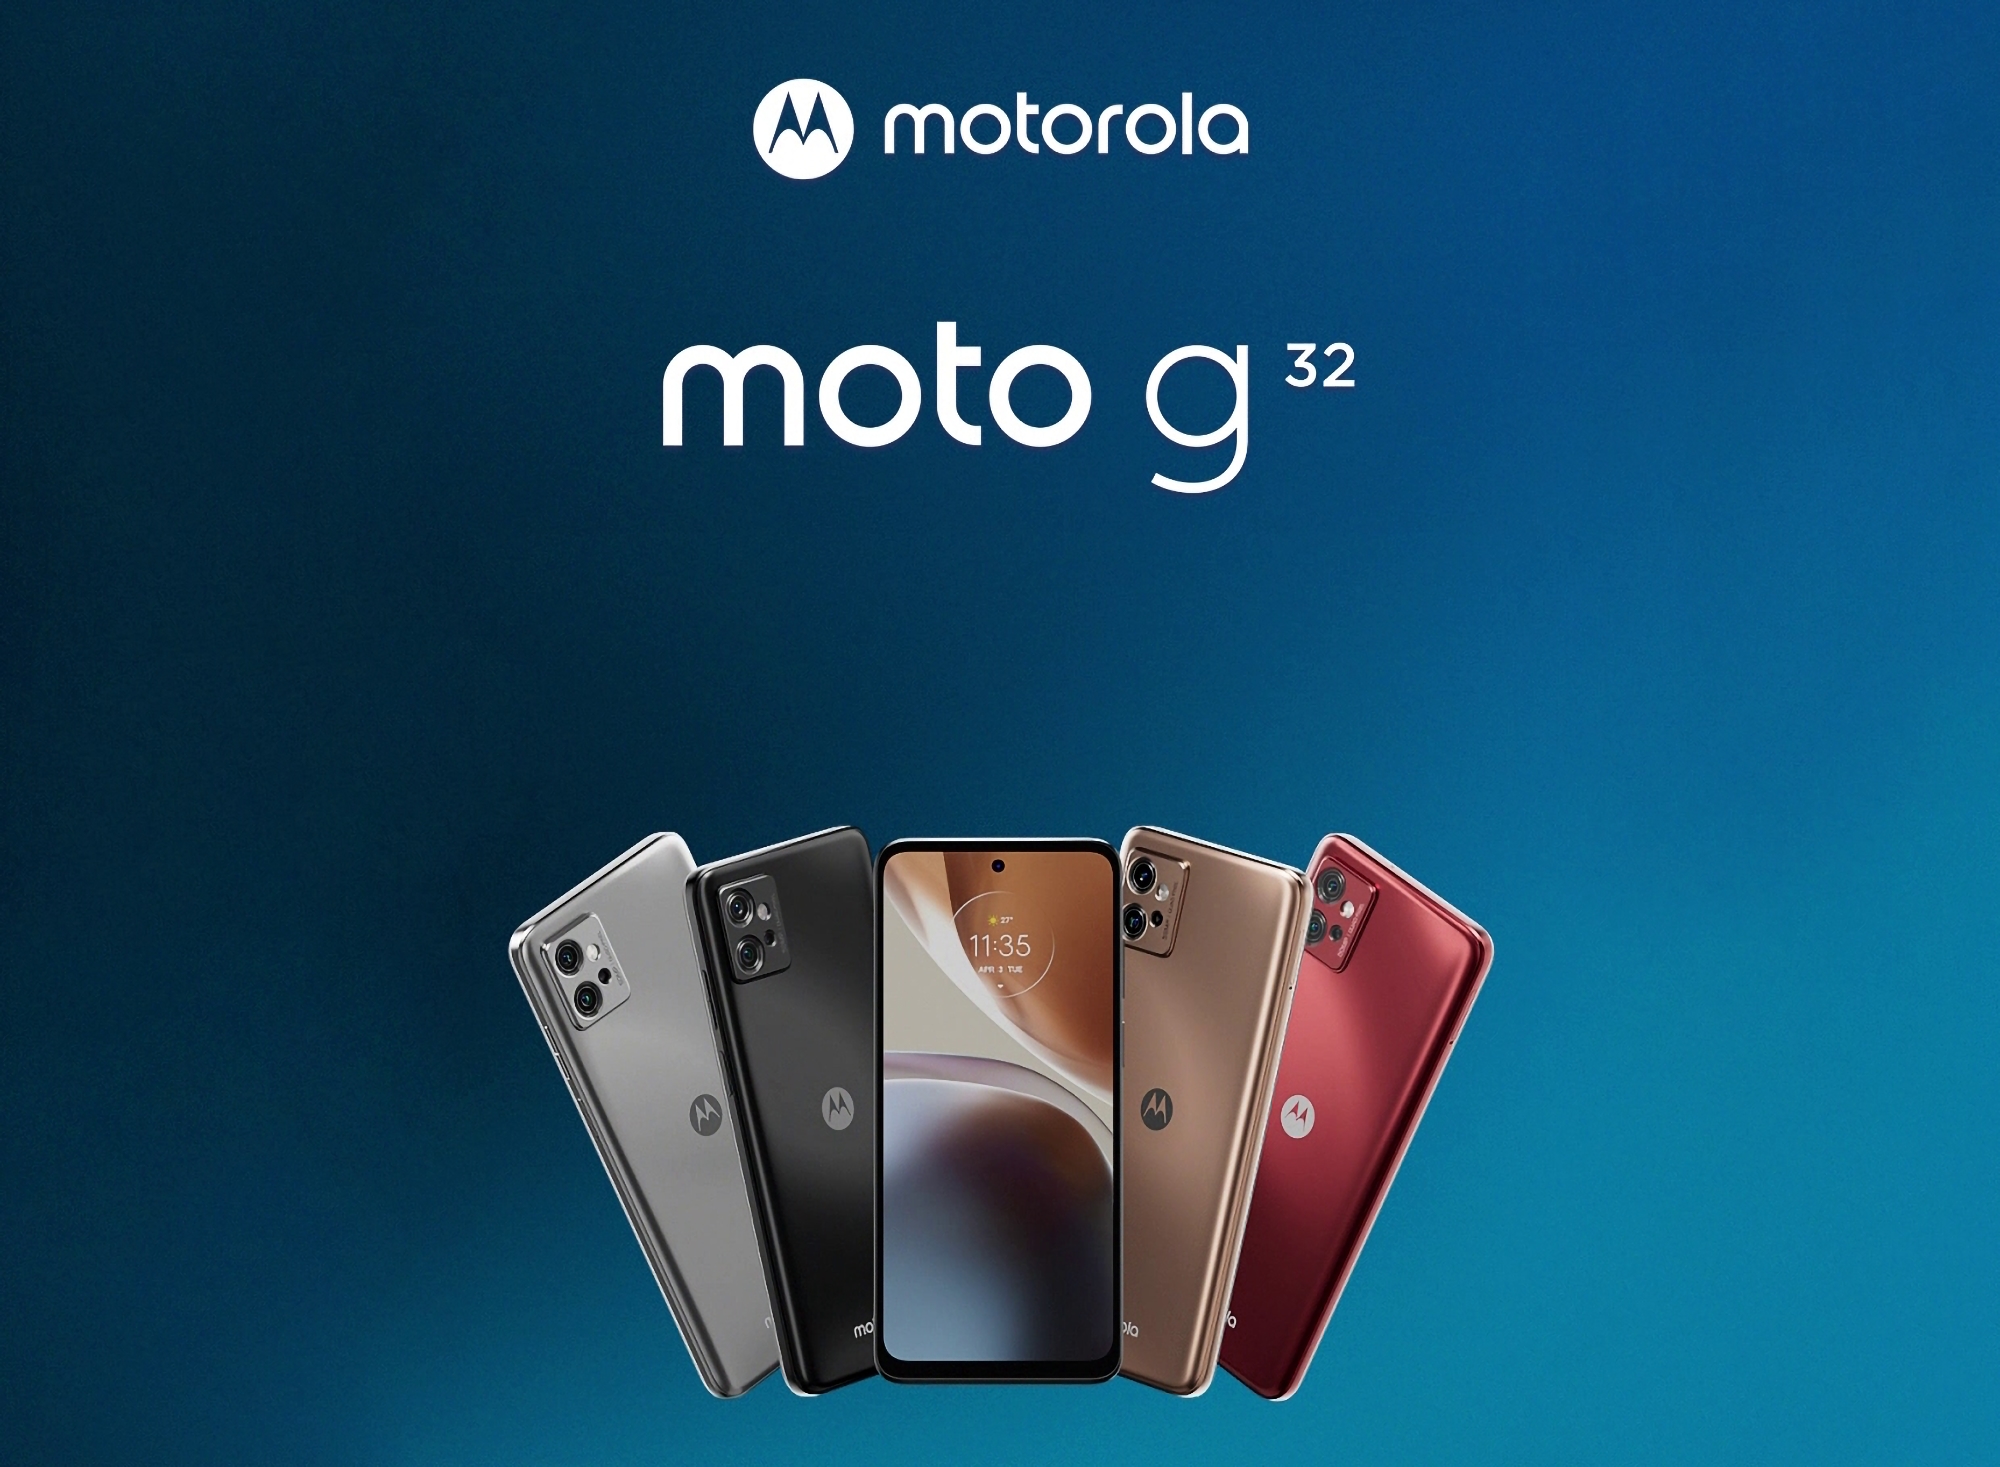 Un initié révèle à quoi ressemblera le smartphone économique Moto G32